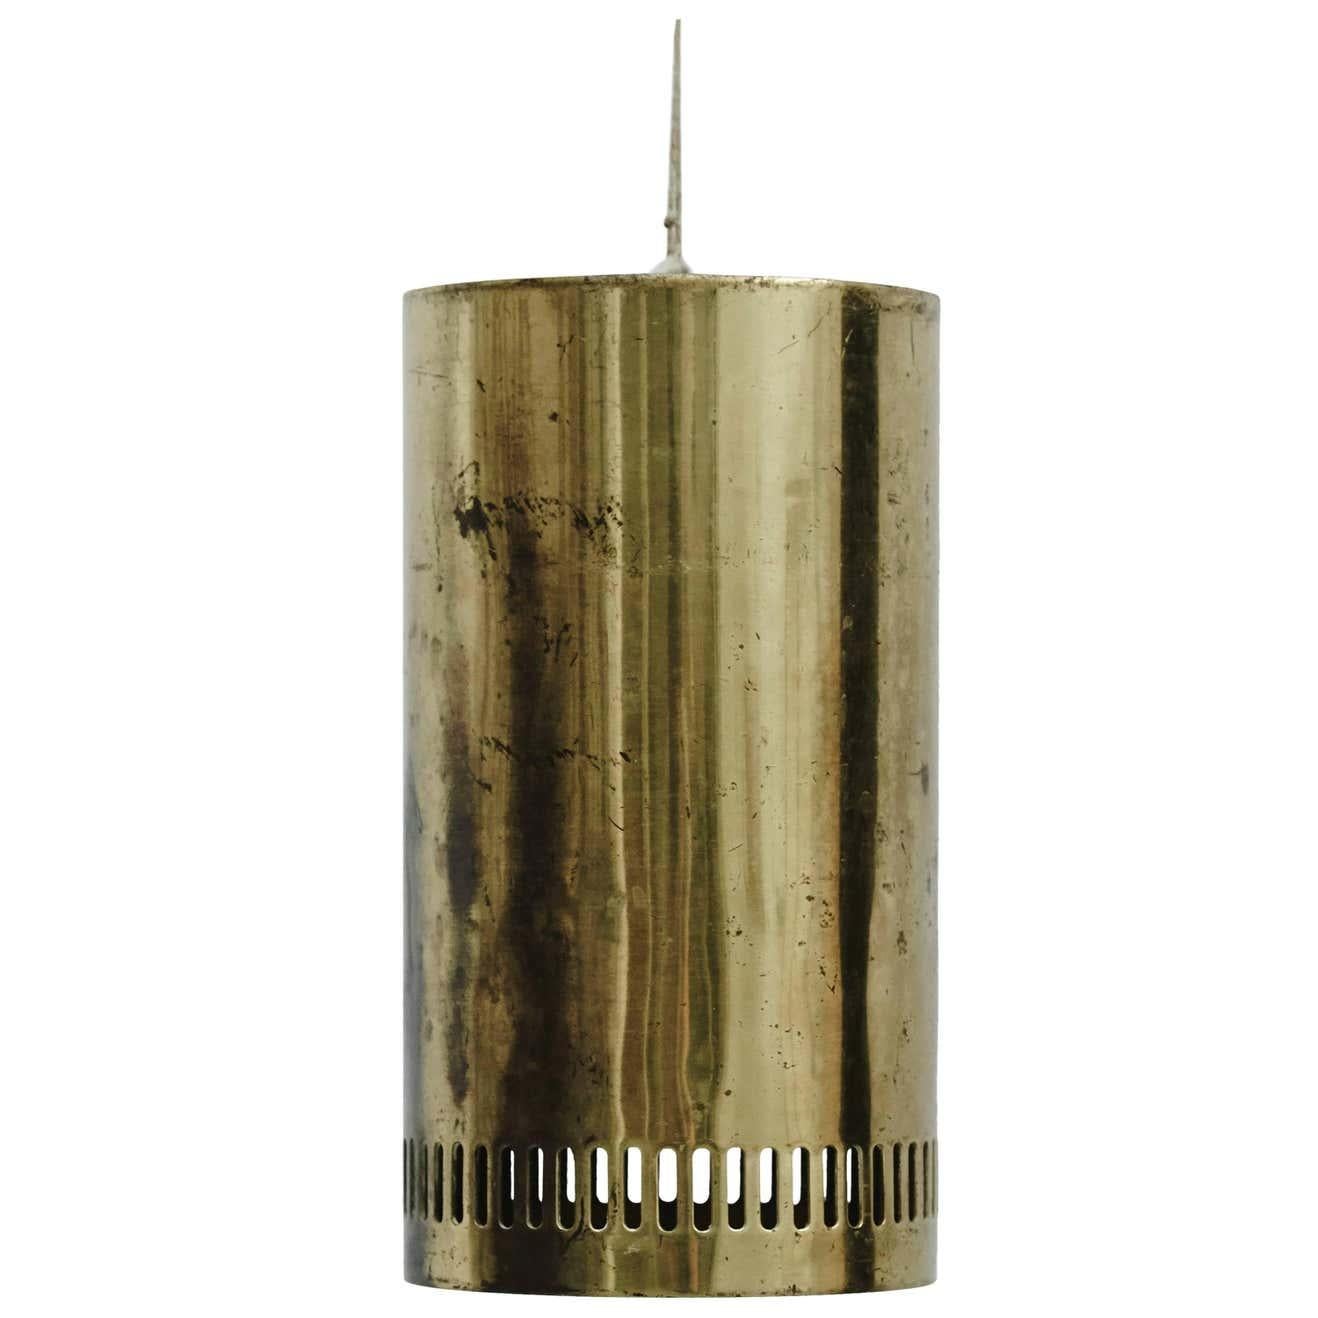 Hängeleuchte, entworfen von Unbekannter Künstler.
Lampe im Stil der Savoy-Lampe von Alvar Aalto, um 1935 in Helsinki.
Enthält nicht das Beleuchtungssystem oder die Glühbirne wie auf dem Foto gezeigt

Originaler Zustand mit geringen alters- und